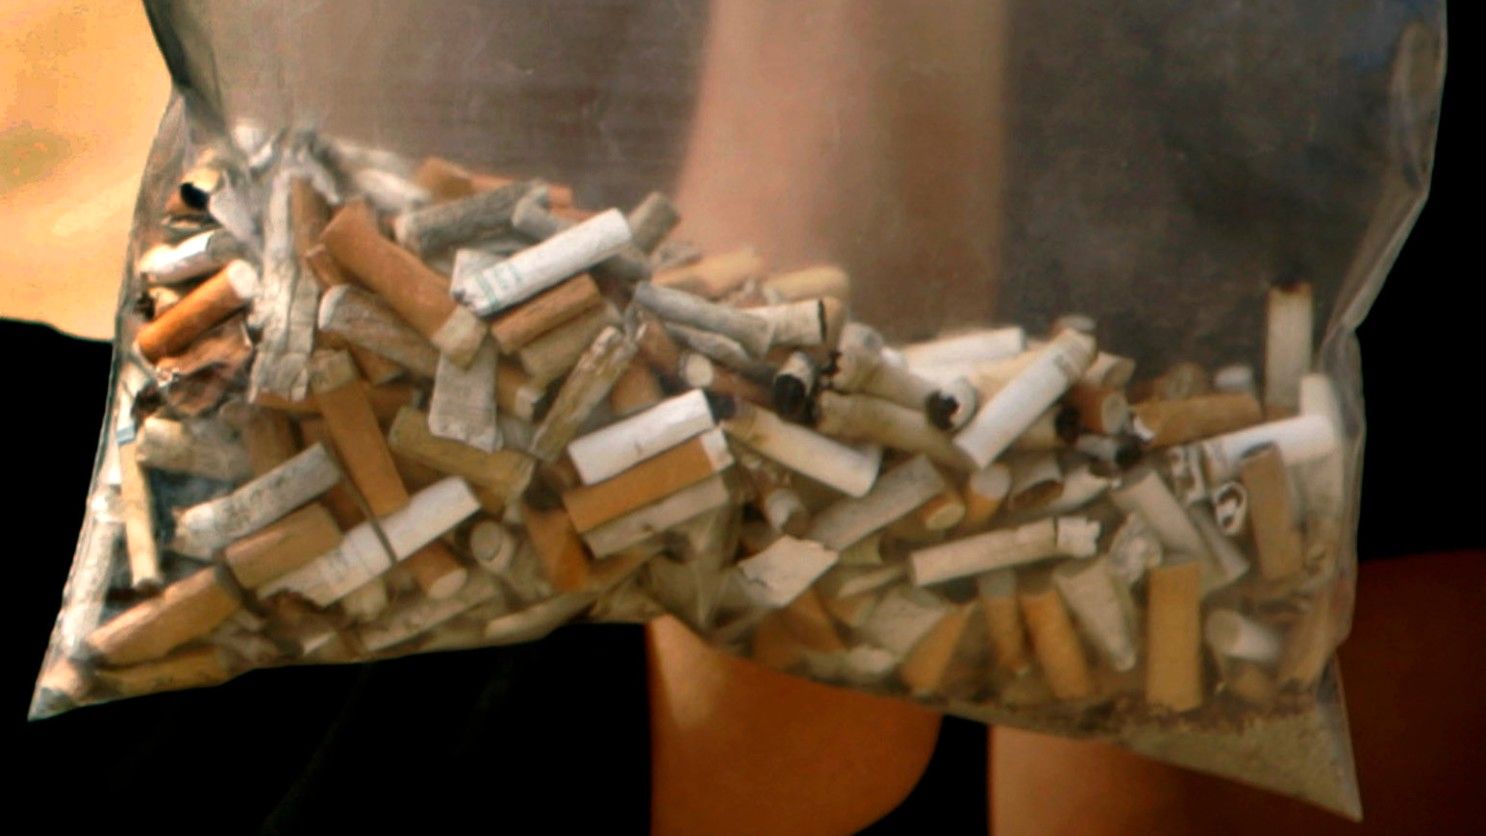 (ویدیو) تا به حال تبدیل فیلتر سیگار دور ریز به حشره کش را دیده بودید ؟ 